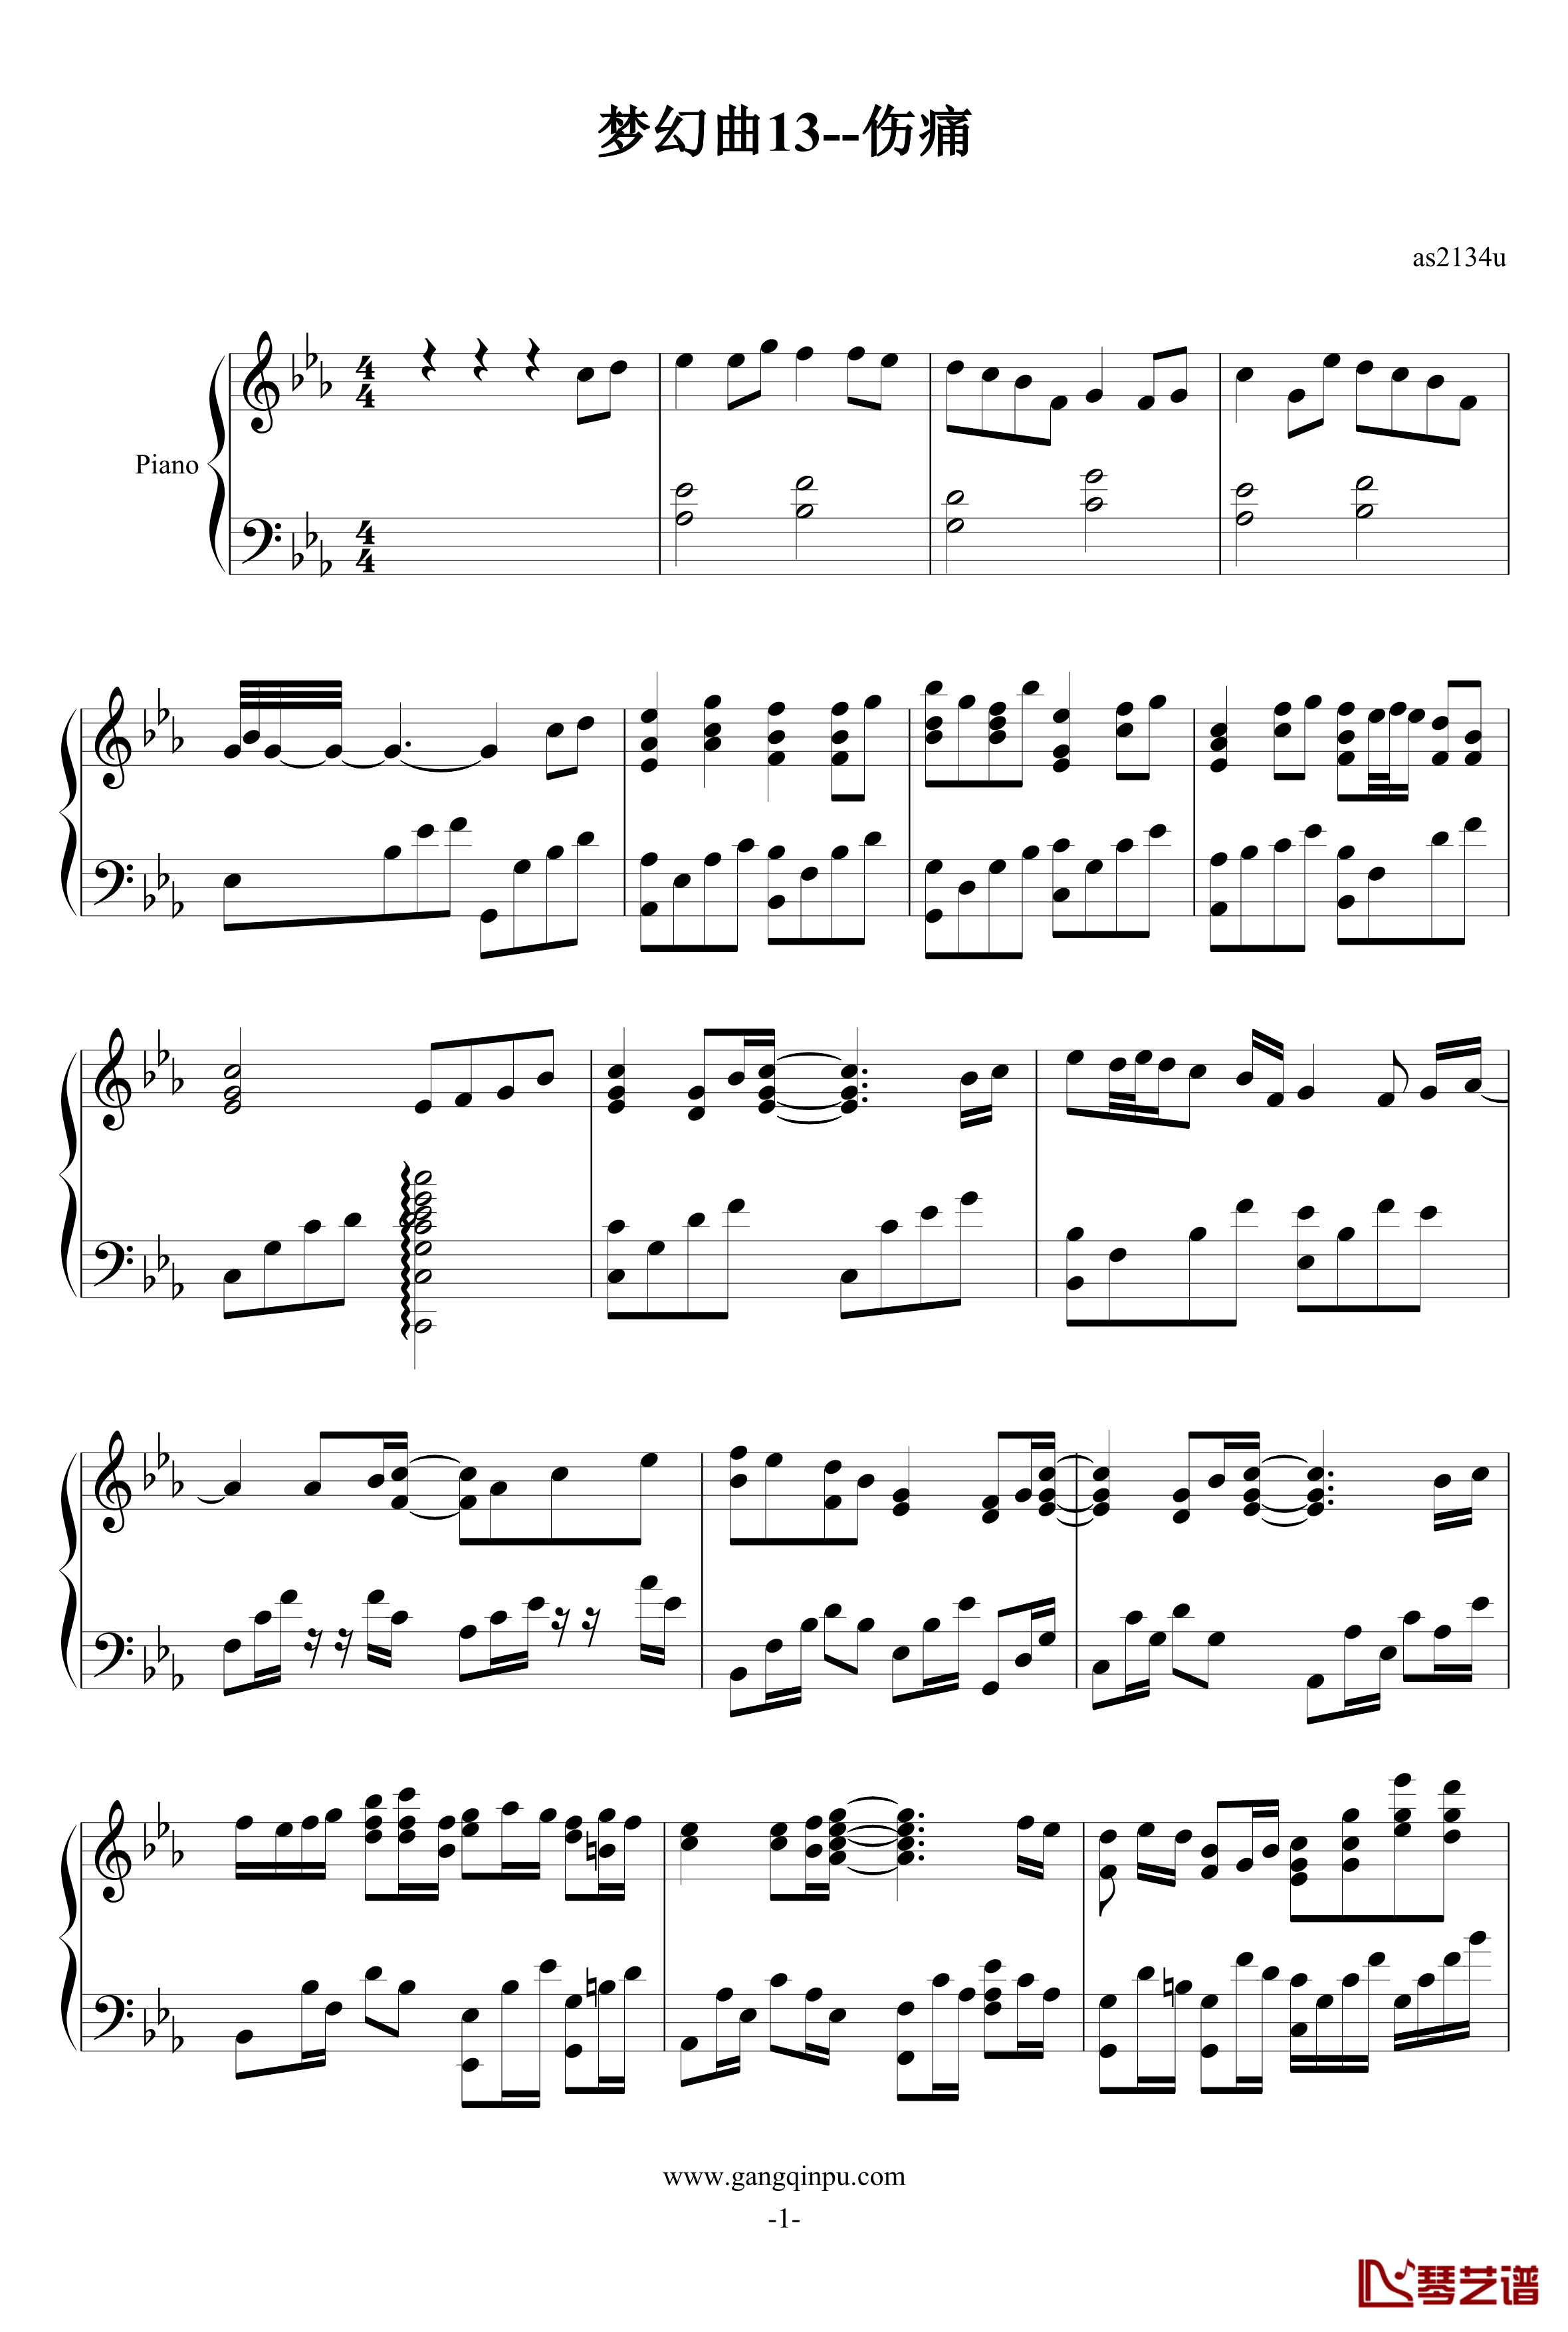 梦幻曲13--伤痛钢琴谱-as2134